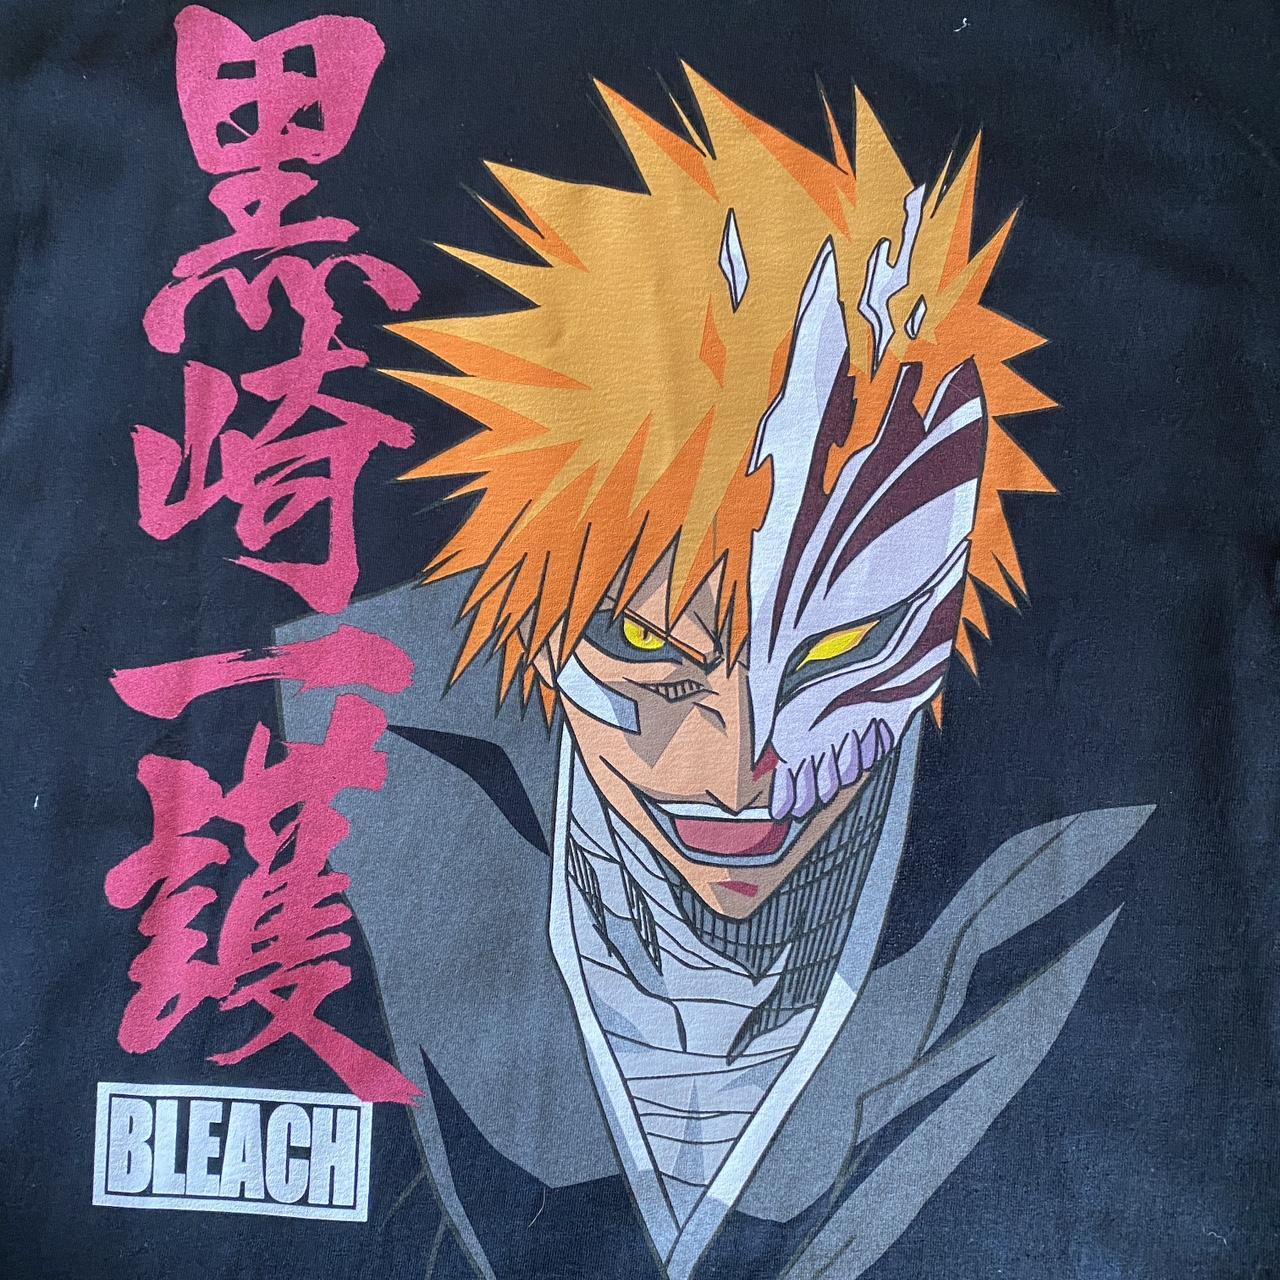 Official Bleach Anime Shirts & Merch - Spencer's